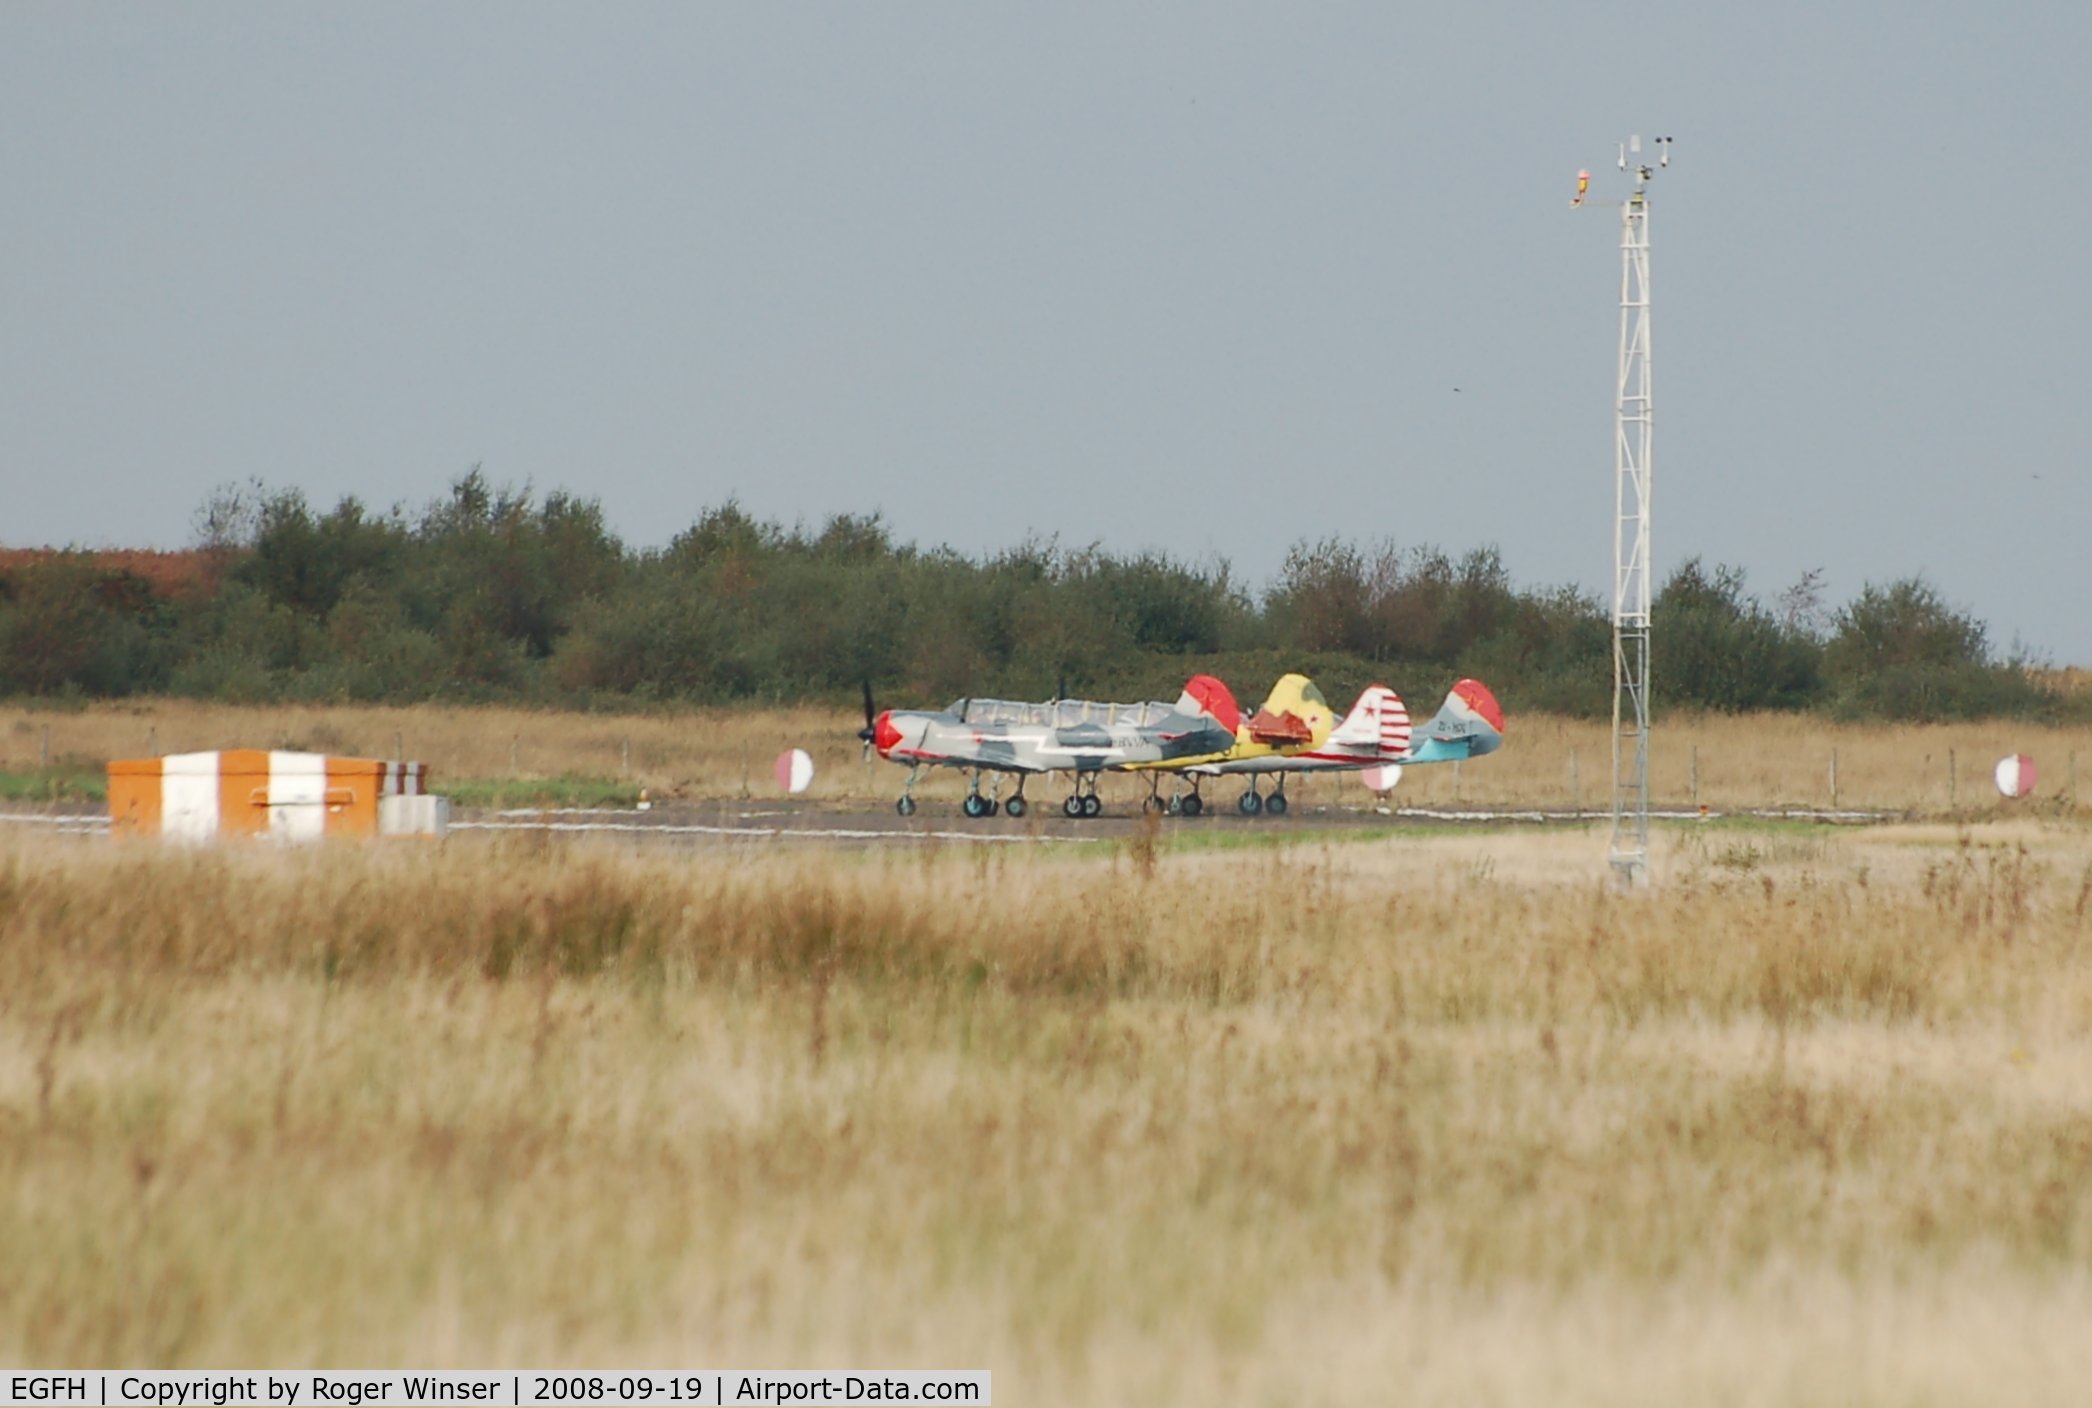 Swansea Airport, Swansea, Wales United Kingdom (EGFH) - Four Yak-52's preparing to depart Runway 22 for formation practice.